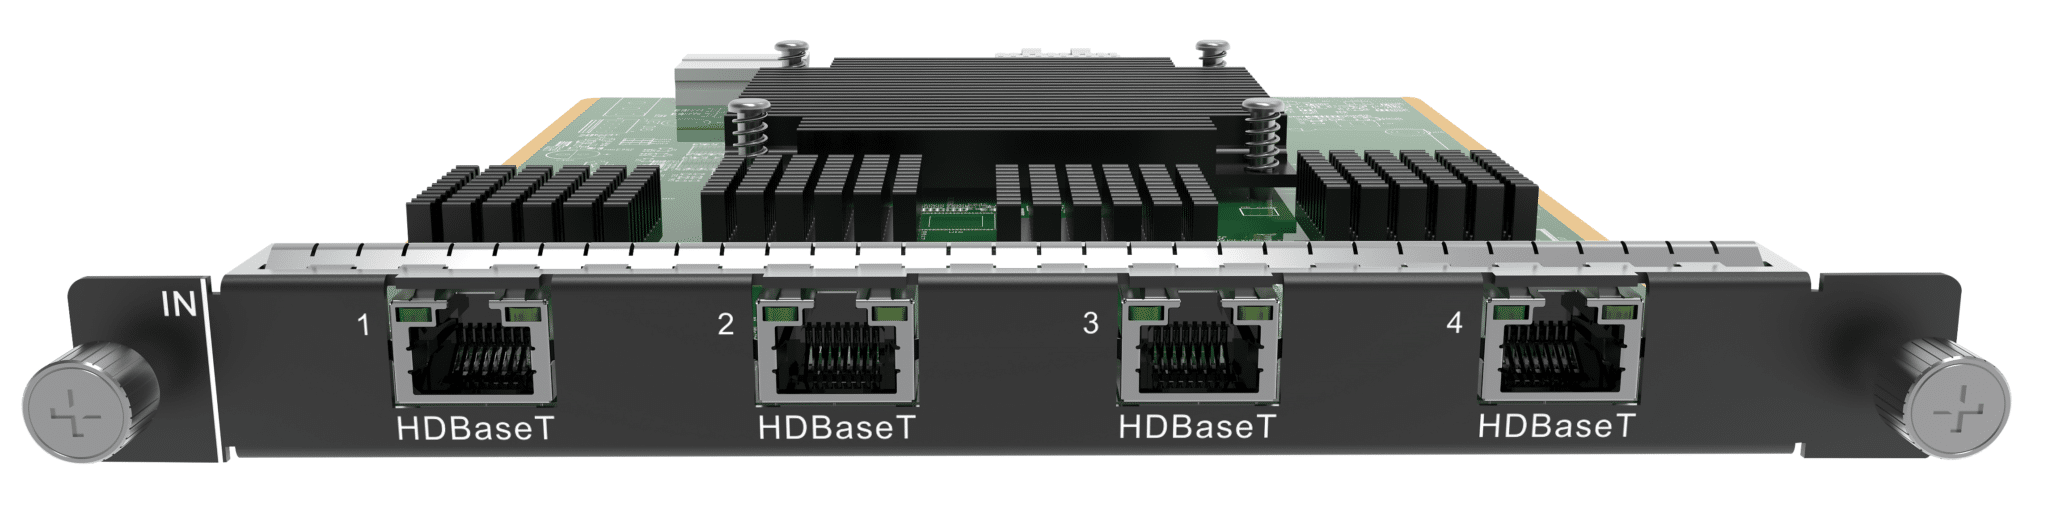 H Series 4x HDBaseT input card - Onlinediscowinkel.nl